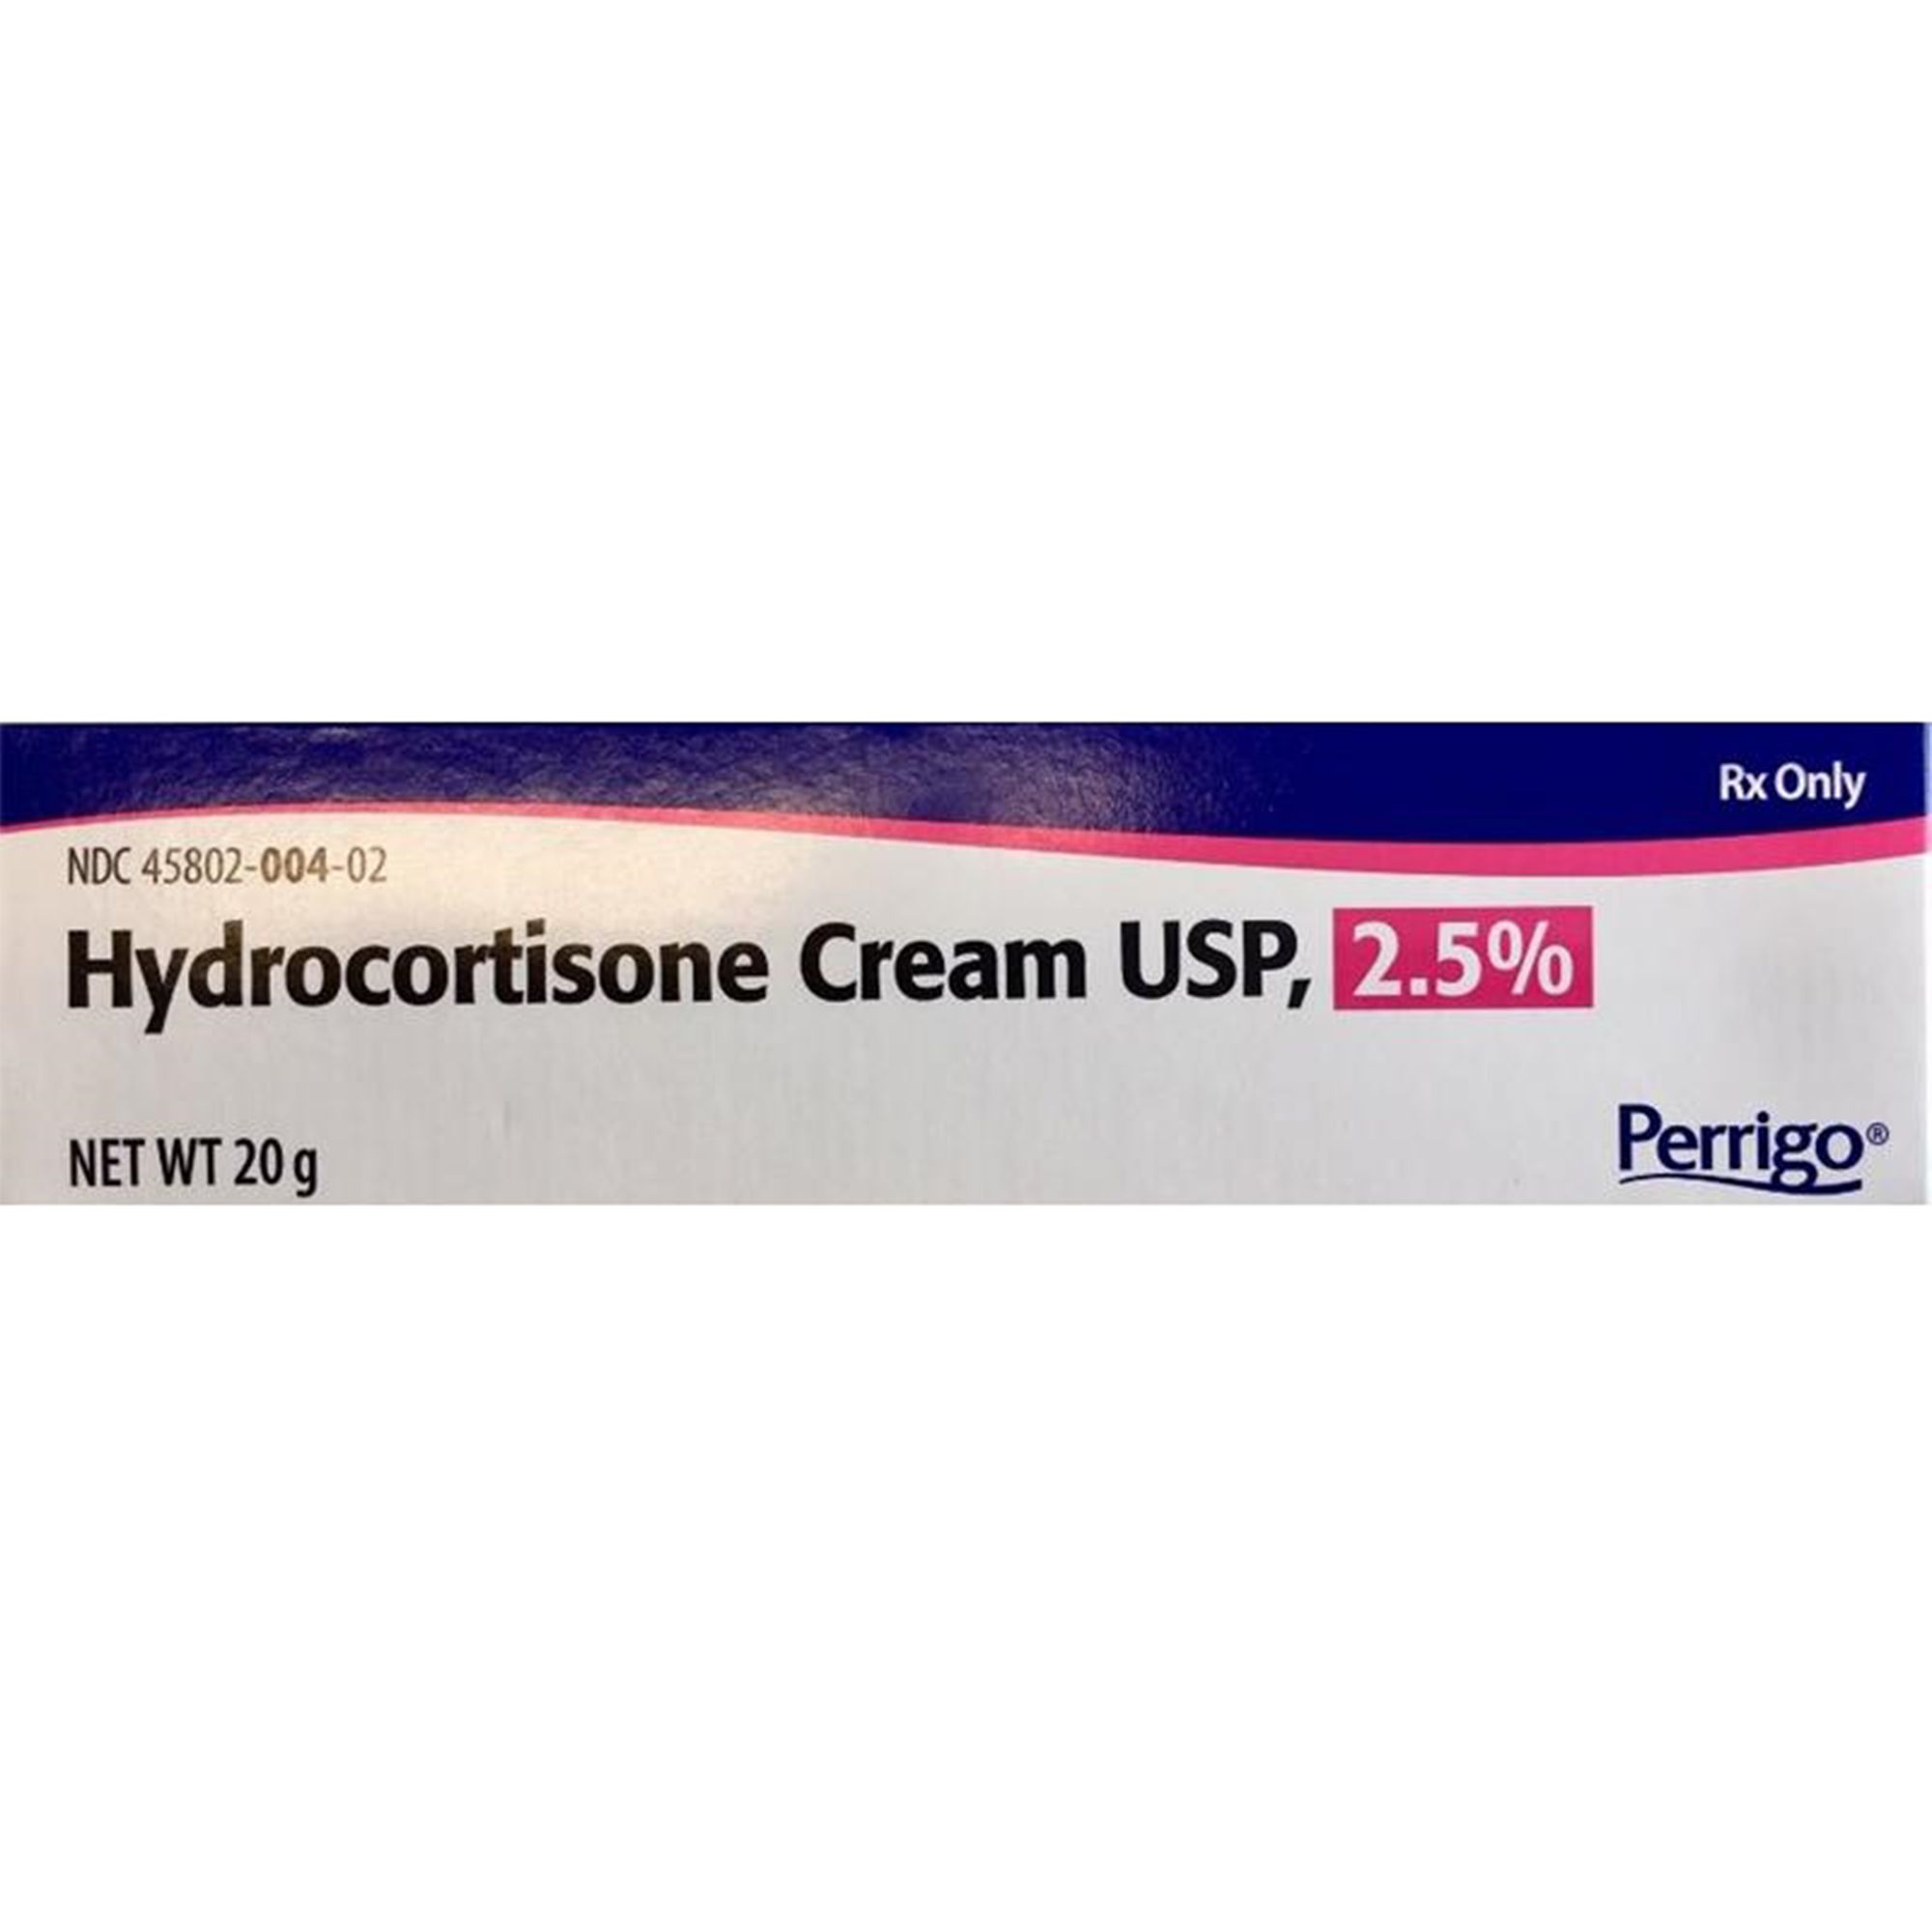 Hydrocortisone Cream USP 2.5%, 20 g.